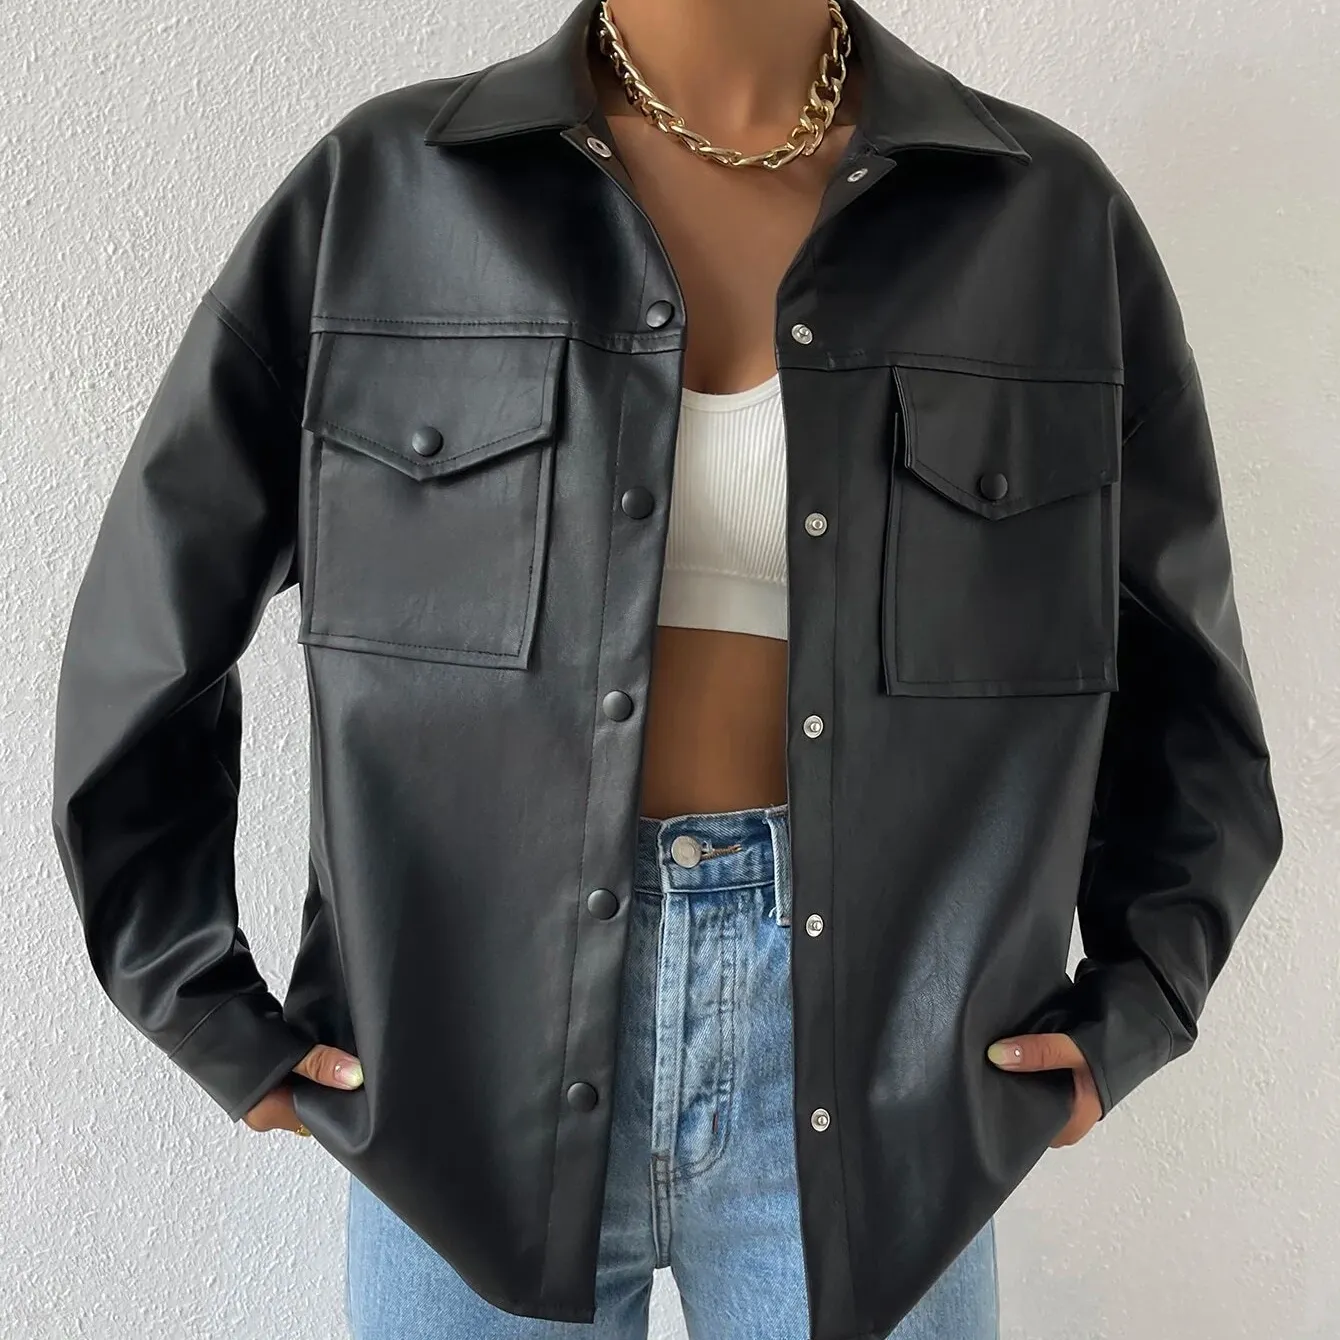 스트리트 스타일 여성의 패션 가죽 자켓 플랩 포켓 드롭 숄더 버튼 다운 블라우스 긴 소매 재킷